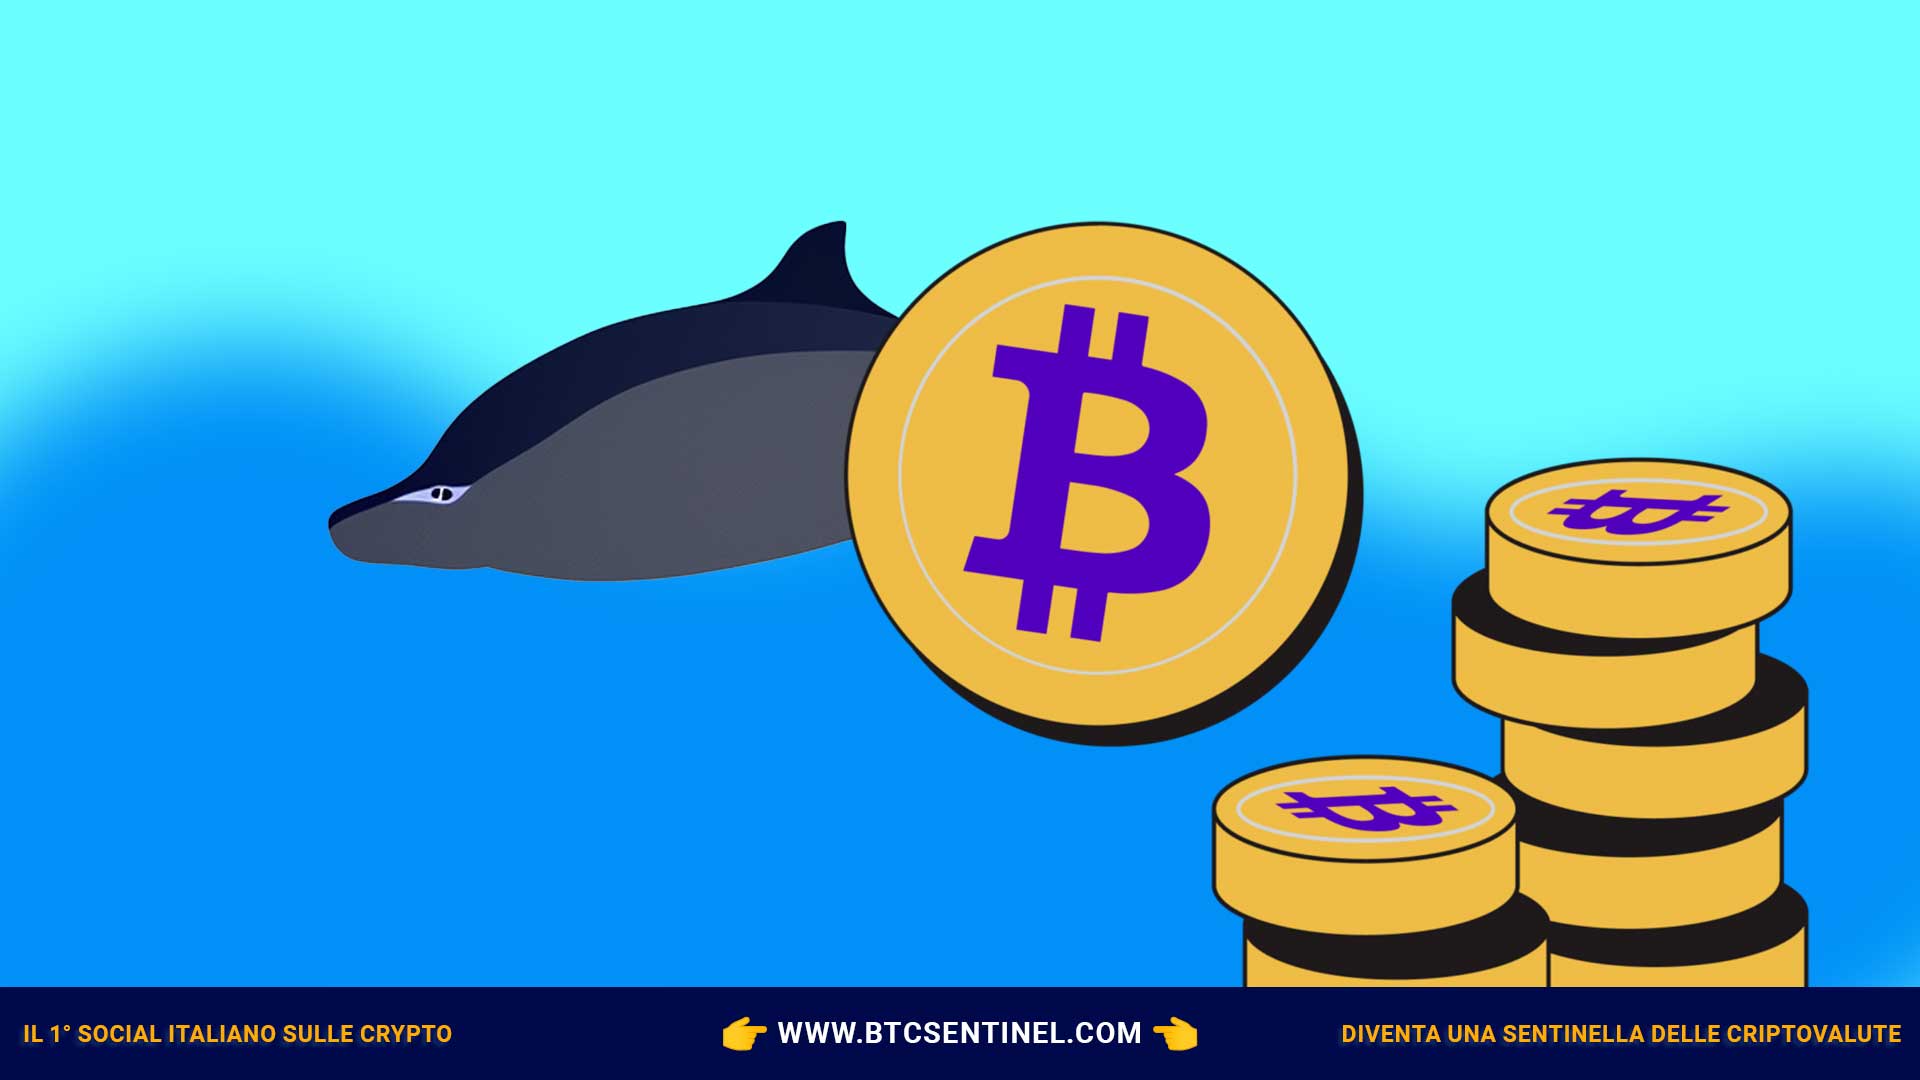 Secondo quanto pubblicato da Santiment, le balene Bitcoin (BTC) potrebbero essere tornate ad accumulare